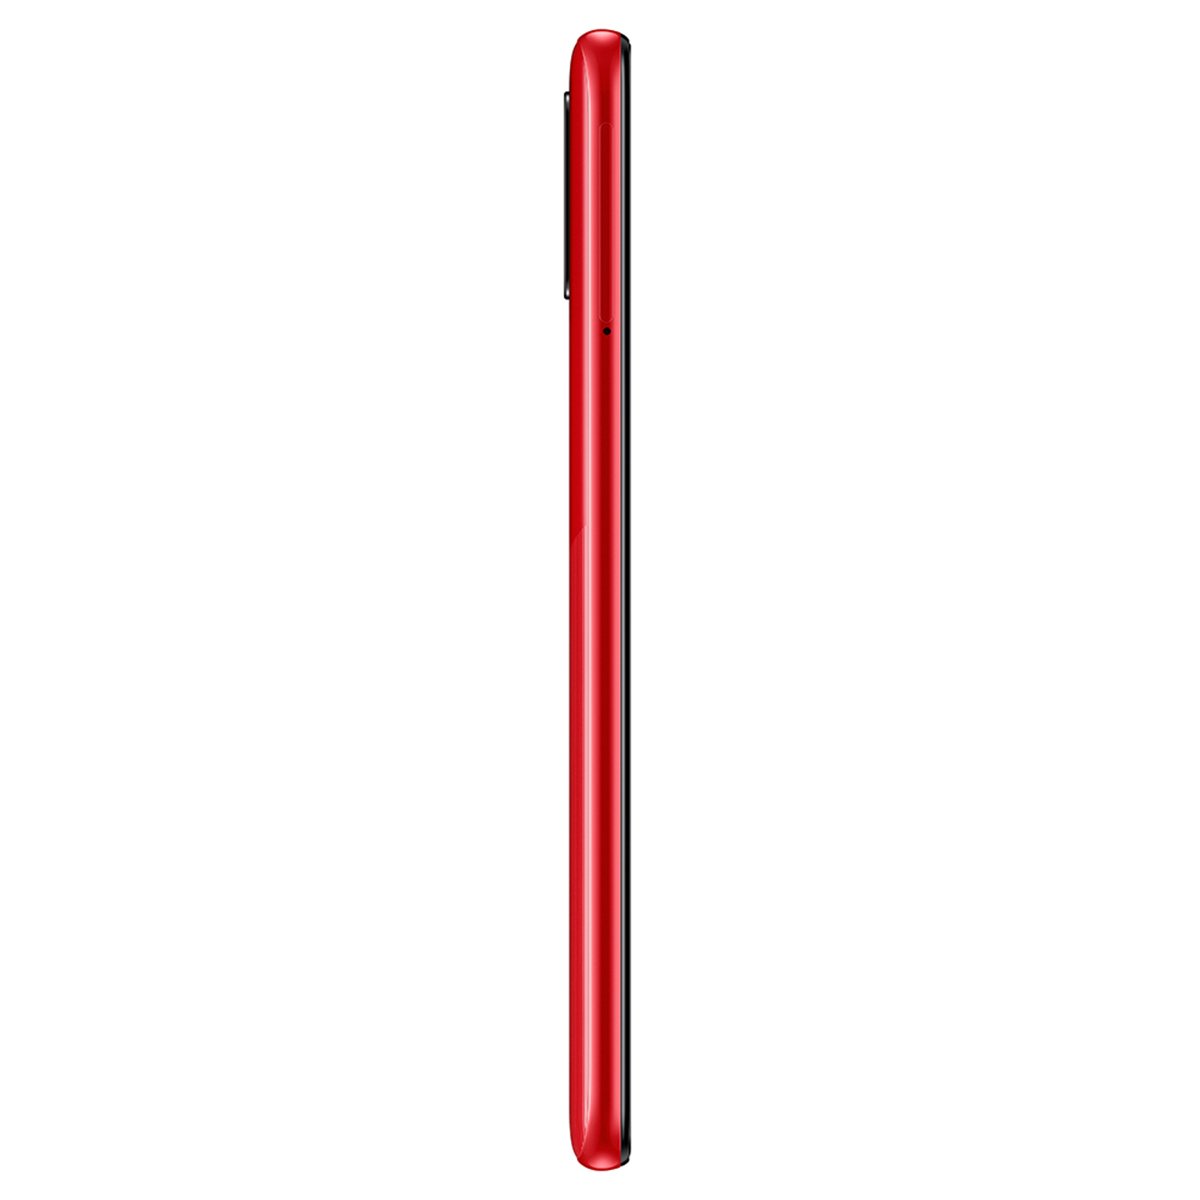 Celular Samsung A315G A31 Color Rojo R9 (Telcel)